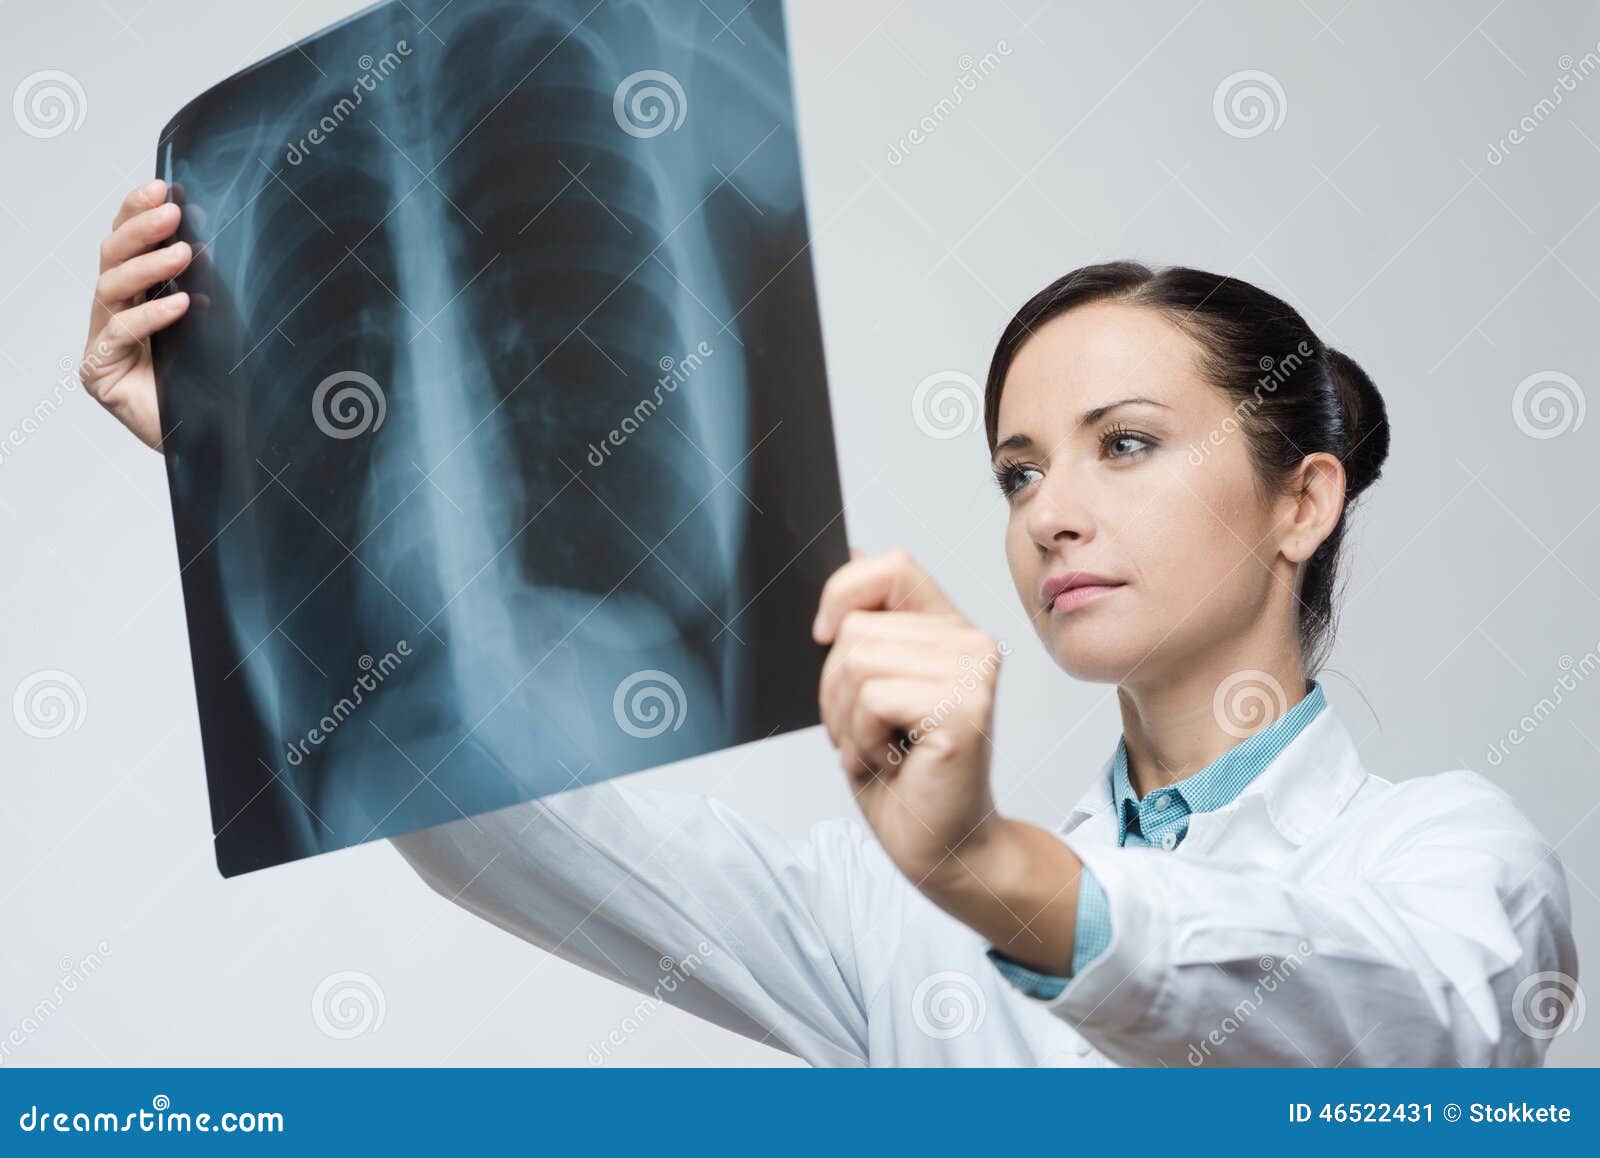 Female Doctor Examining X Ray Image Stock Image Image Of